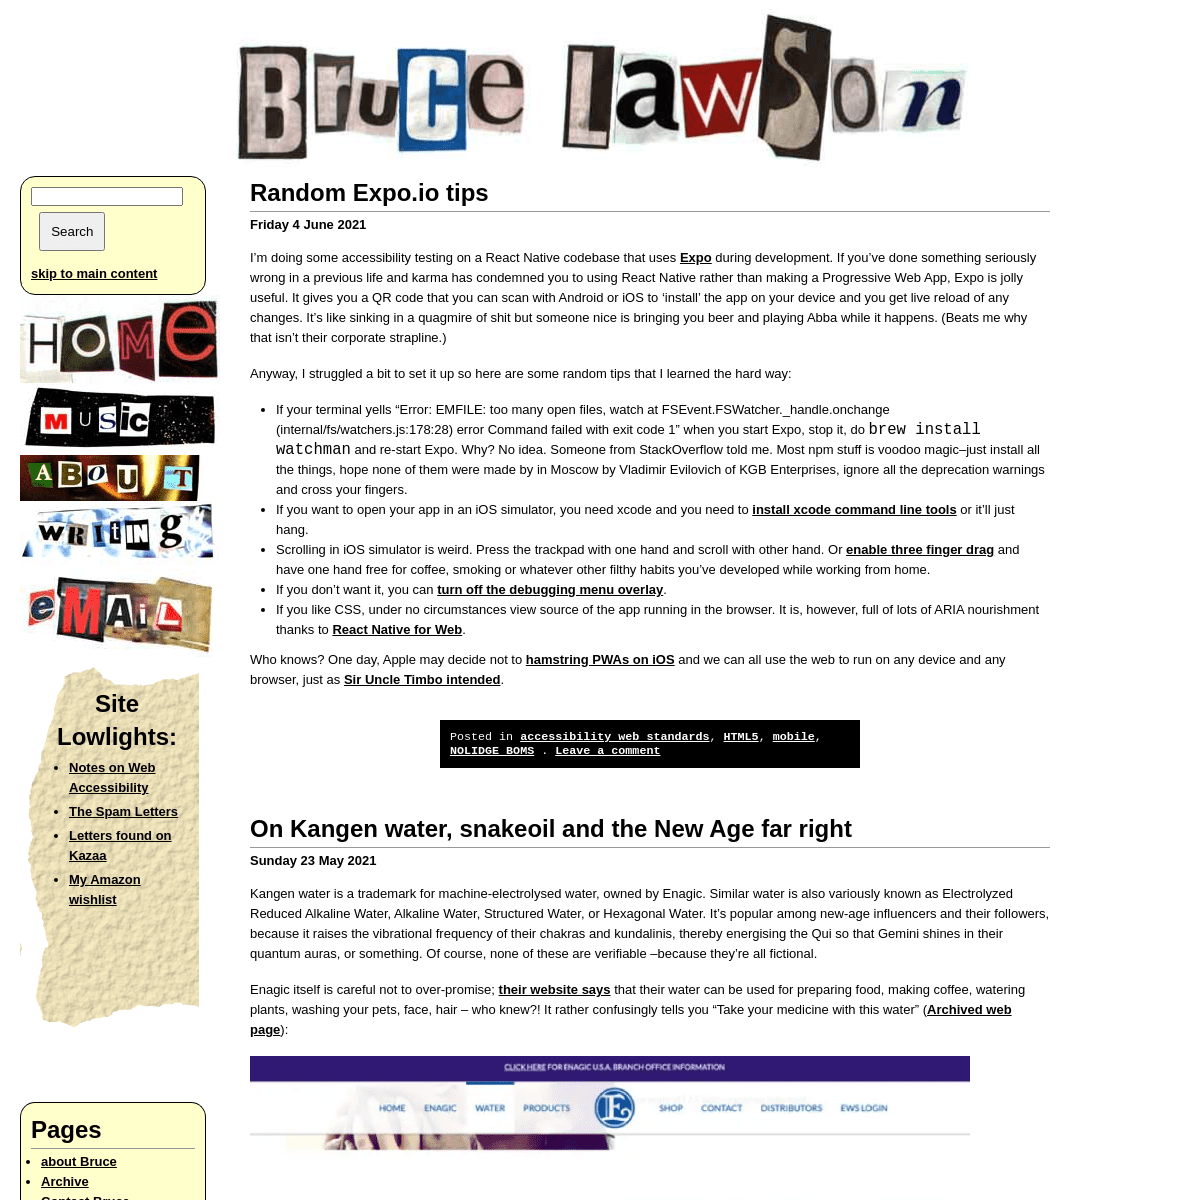 A complete backup of https://brucelawson.co.uk